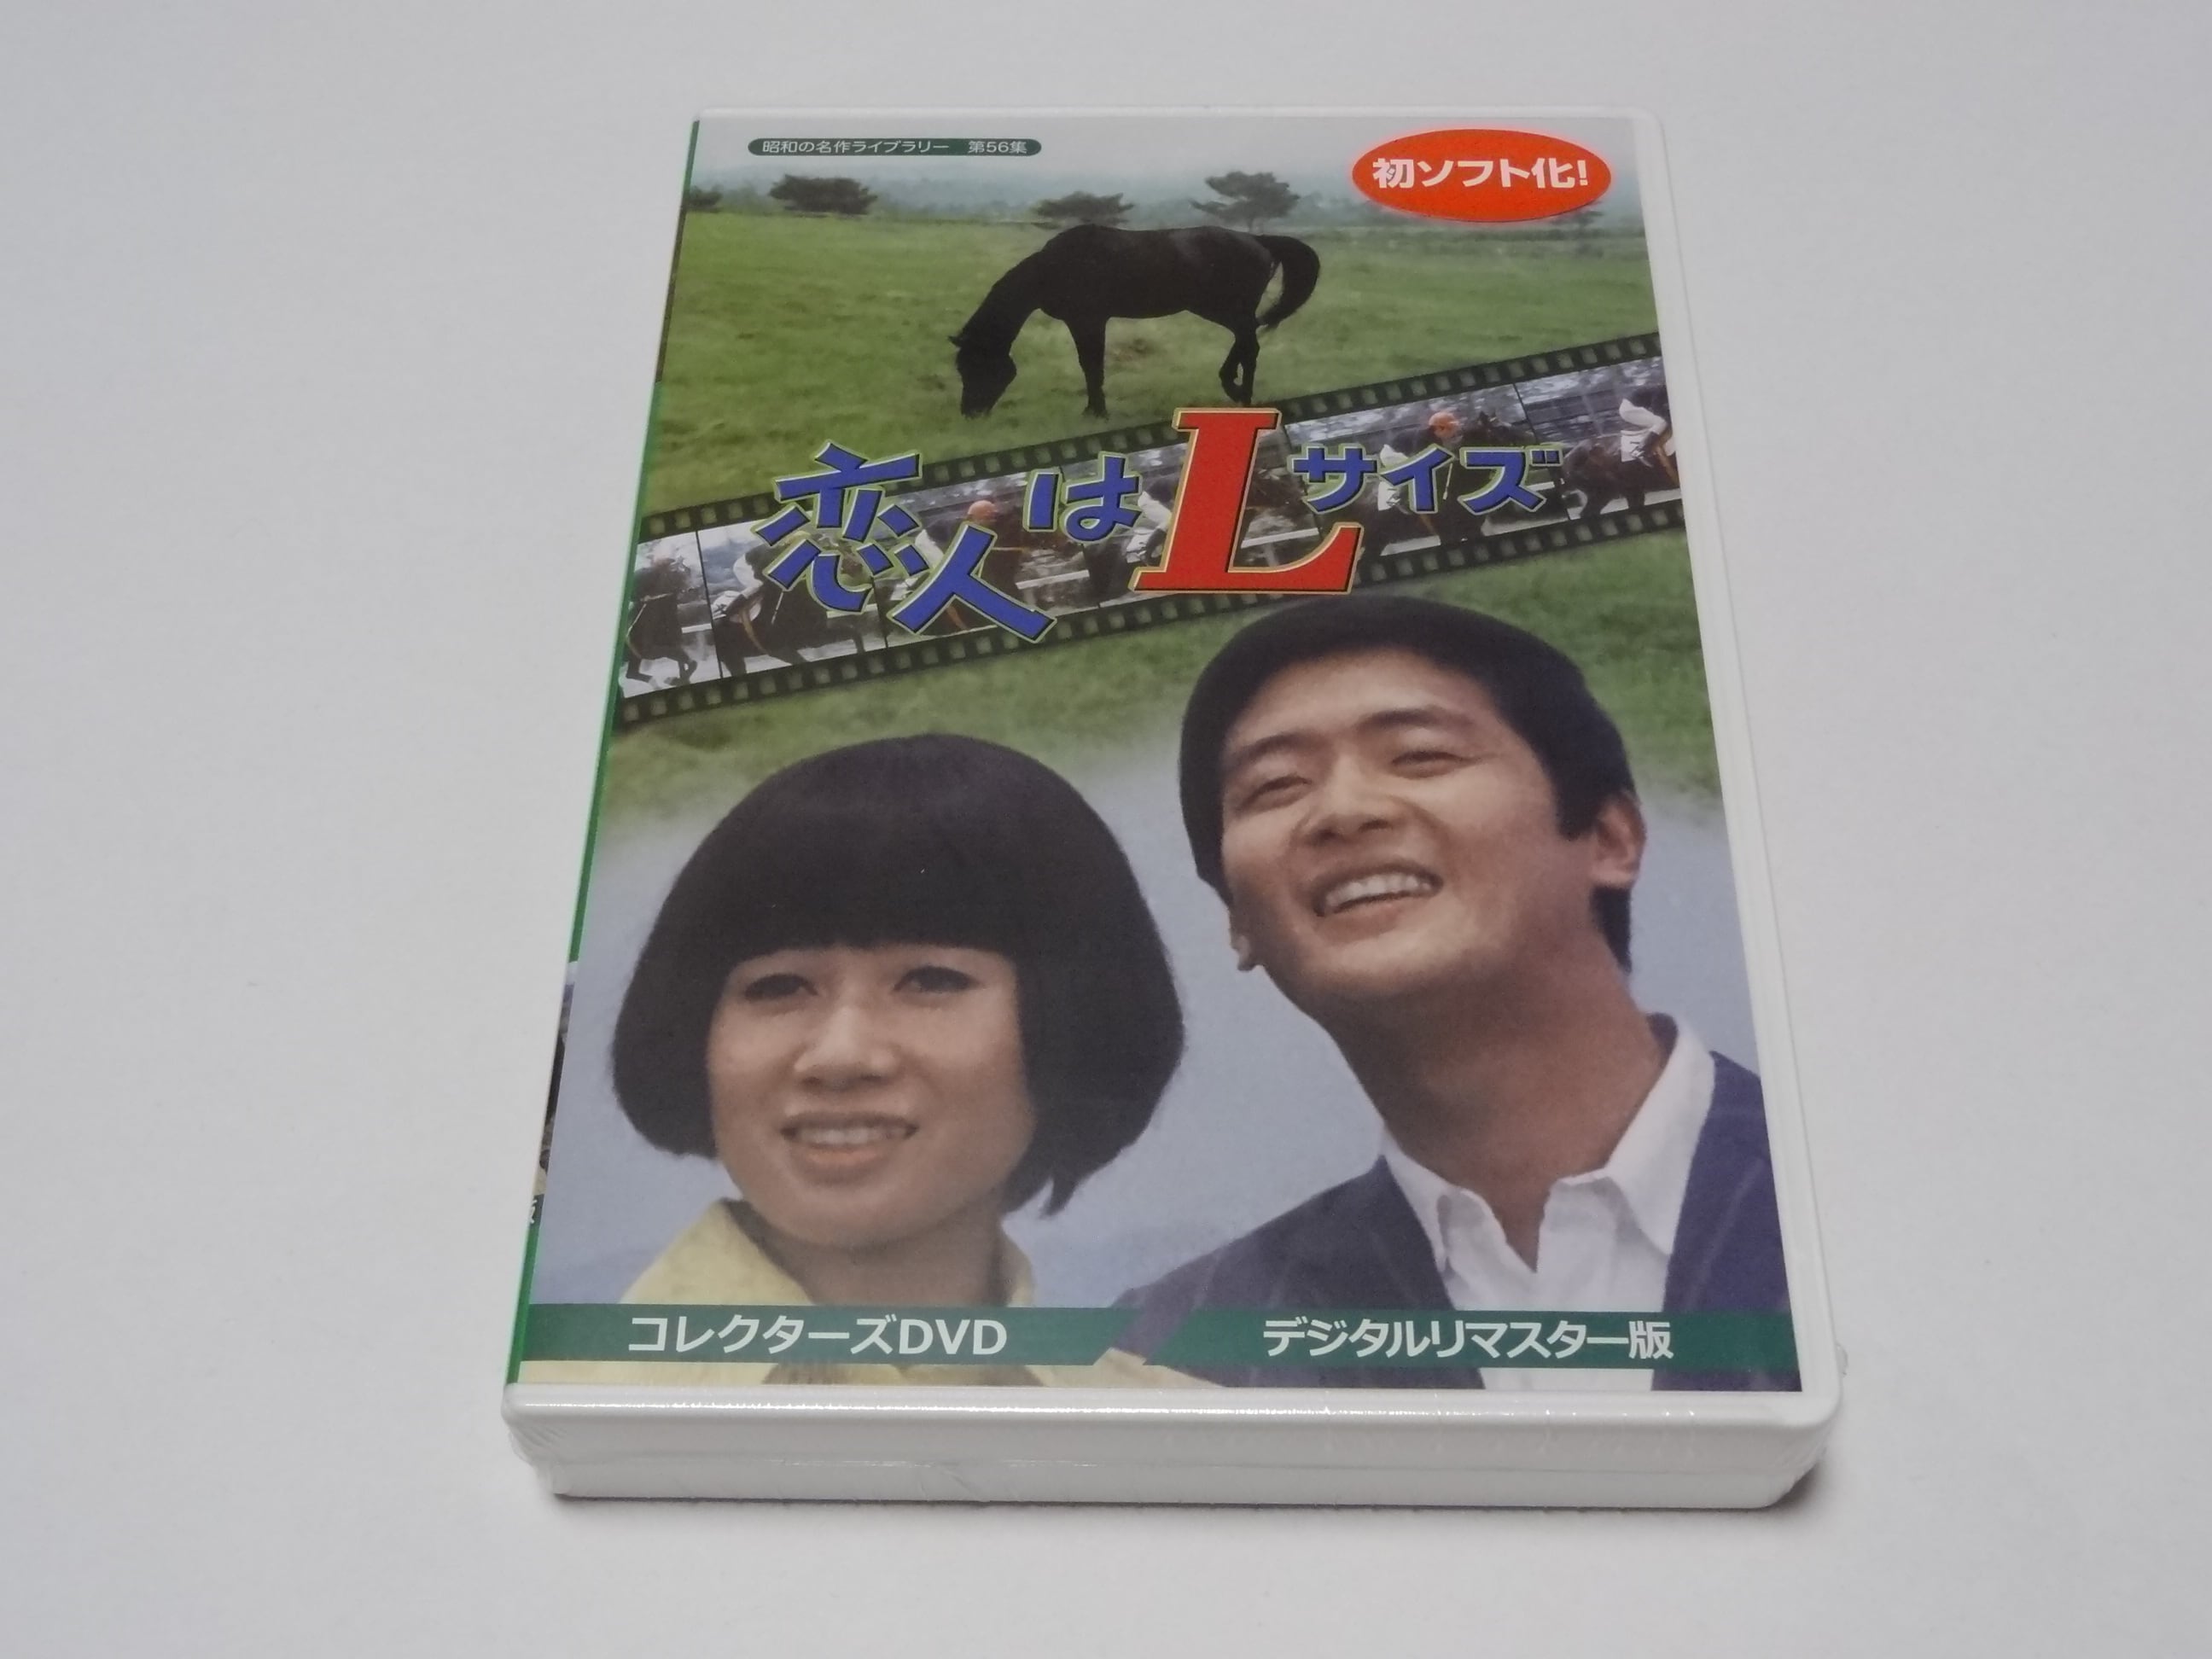 恋人コレクターズ・ DVD 最終4800円を12/10迄特別価格4２00円